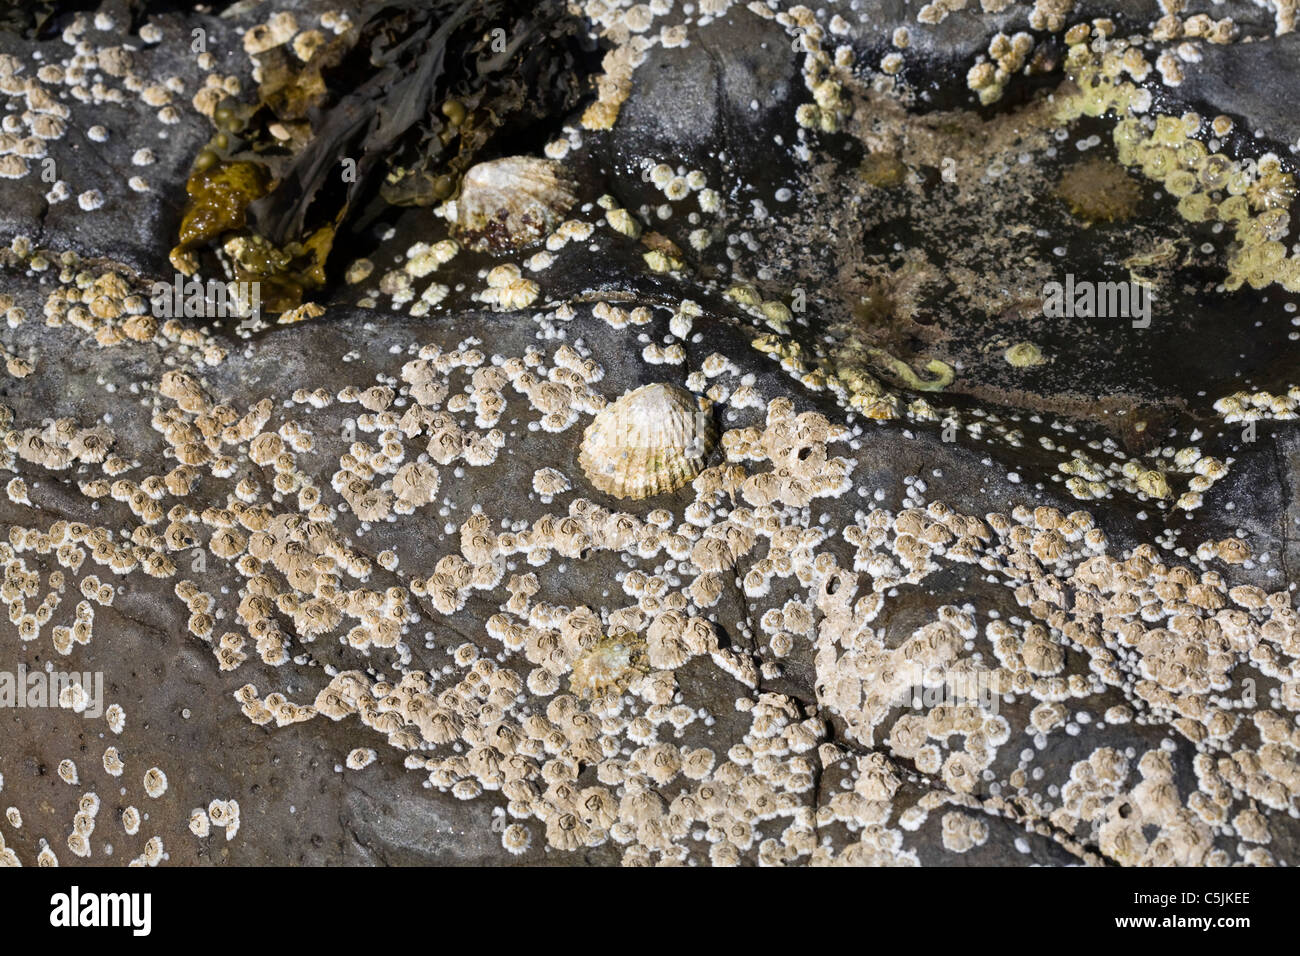 Gemeinsamen Napfschnecken und Eichel Seepocken Rubha Ardnish Strand Breakish Broadford Isle Of Skye Schottland Stockfoto